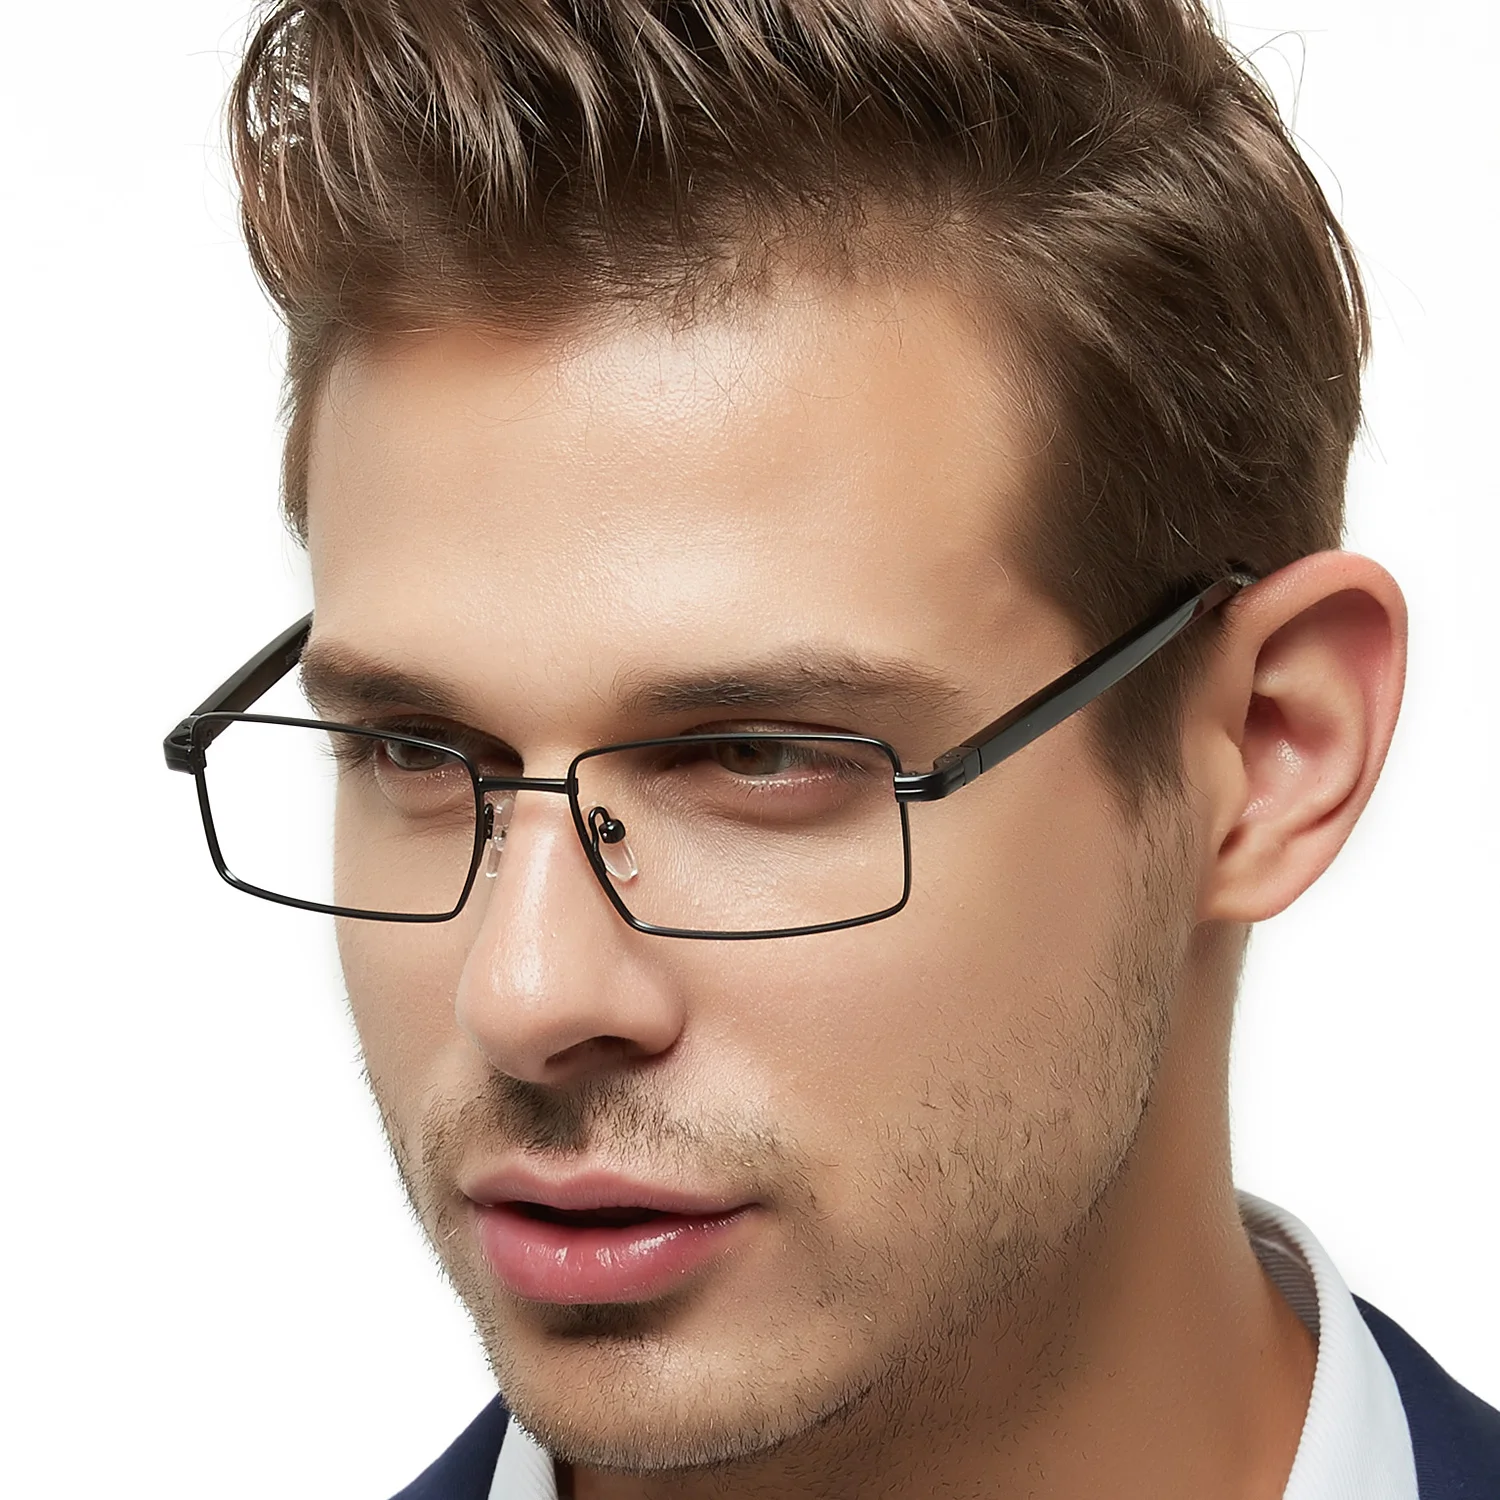 Сайт очков мужских. Enzo оправа для очков мужская. Очки для зрения мужские. Модные мужские очки. Модные мужские оправы.